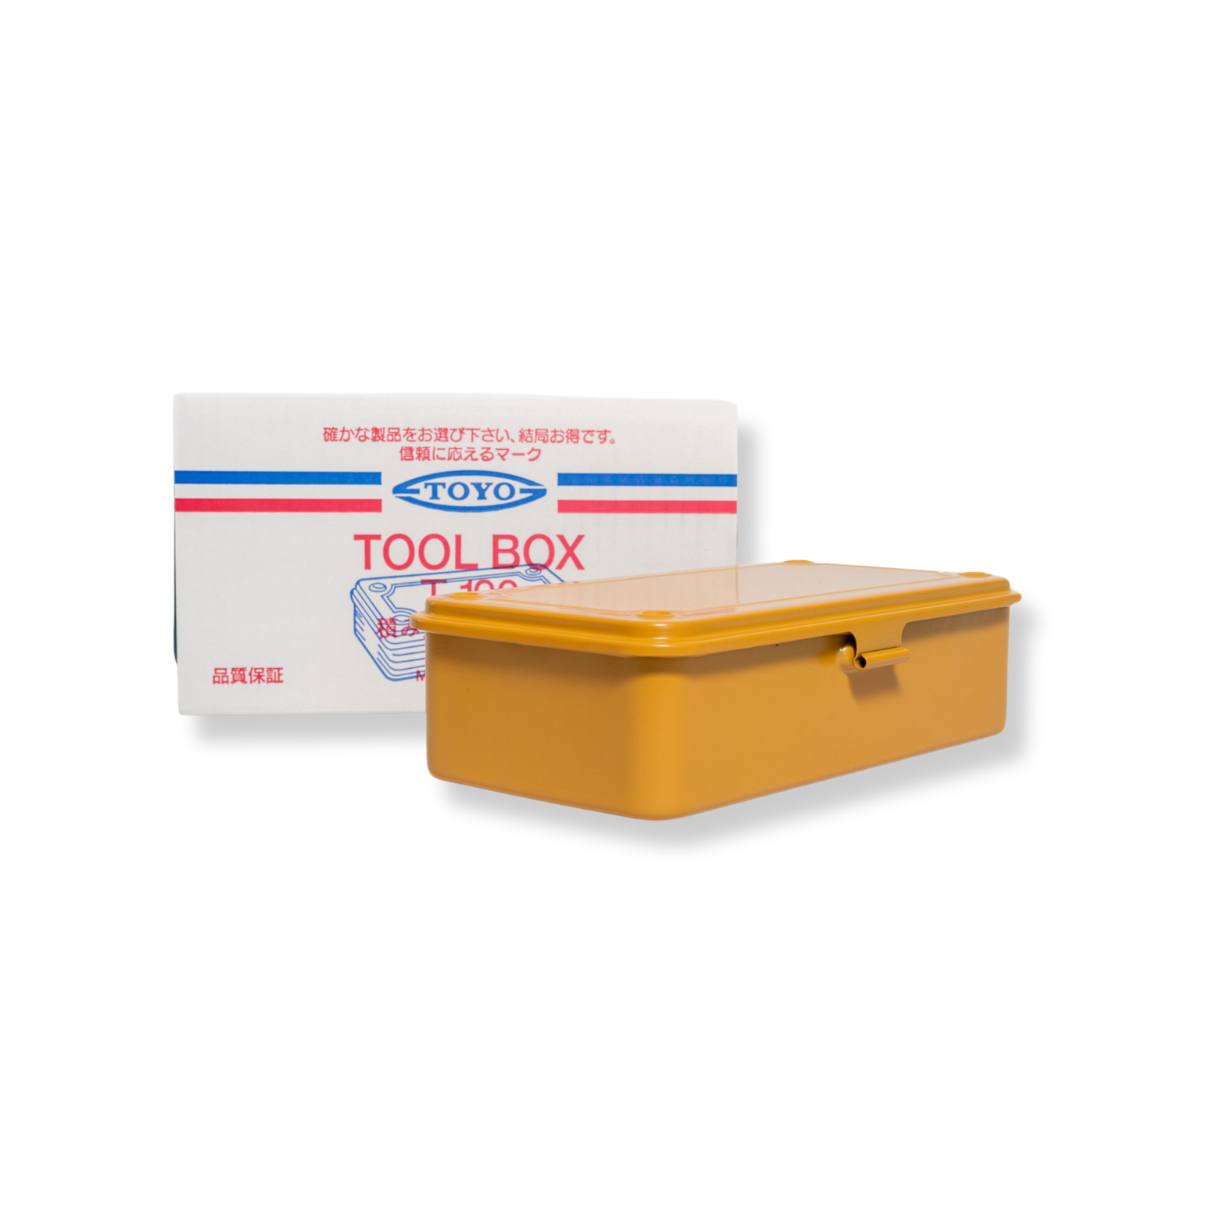 TOYO Steel T 190 Box - mustard